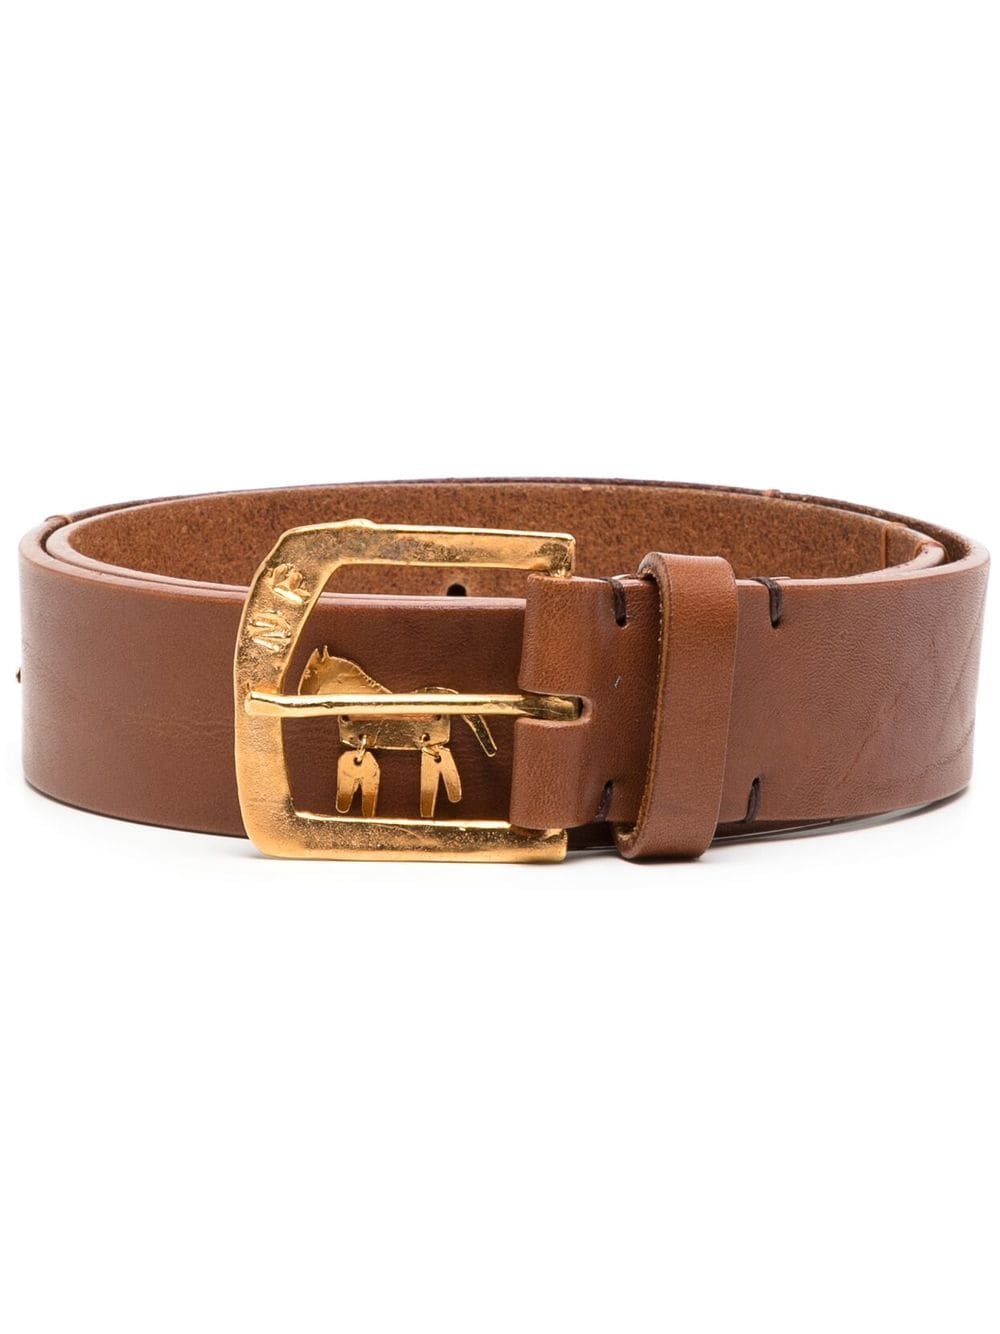 Shop Nick Fouquet Leather Buckle Belt